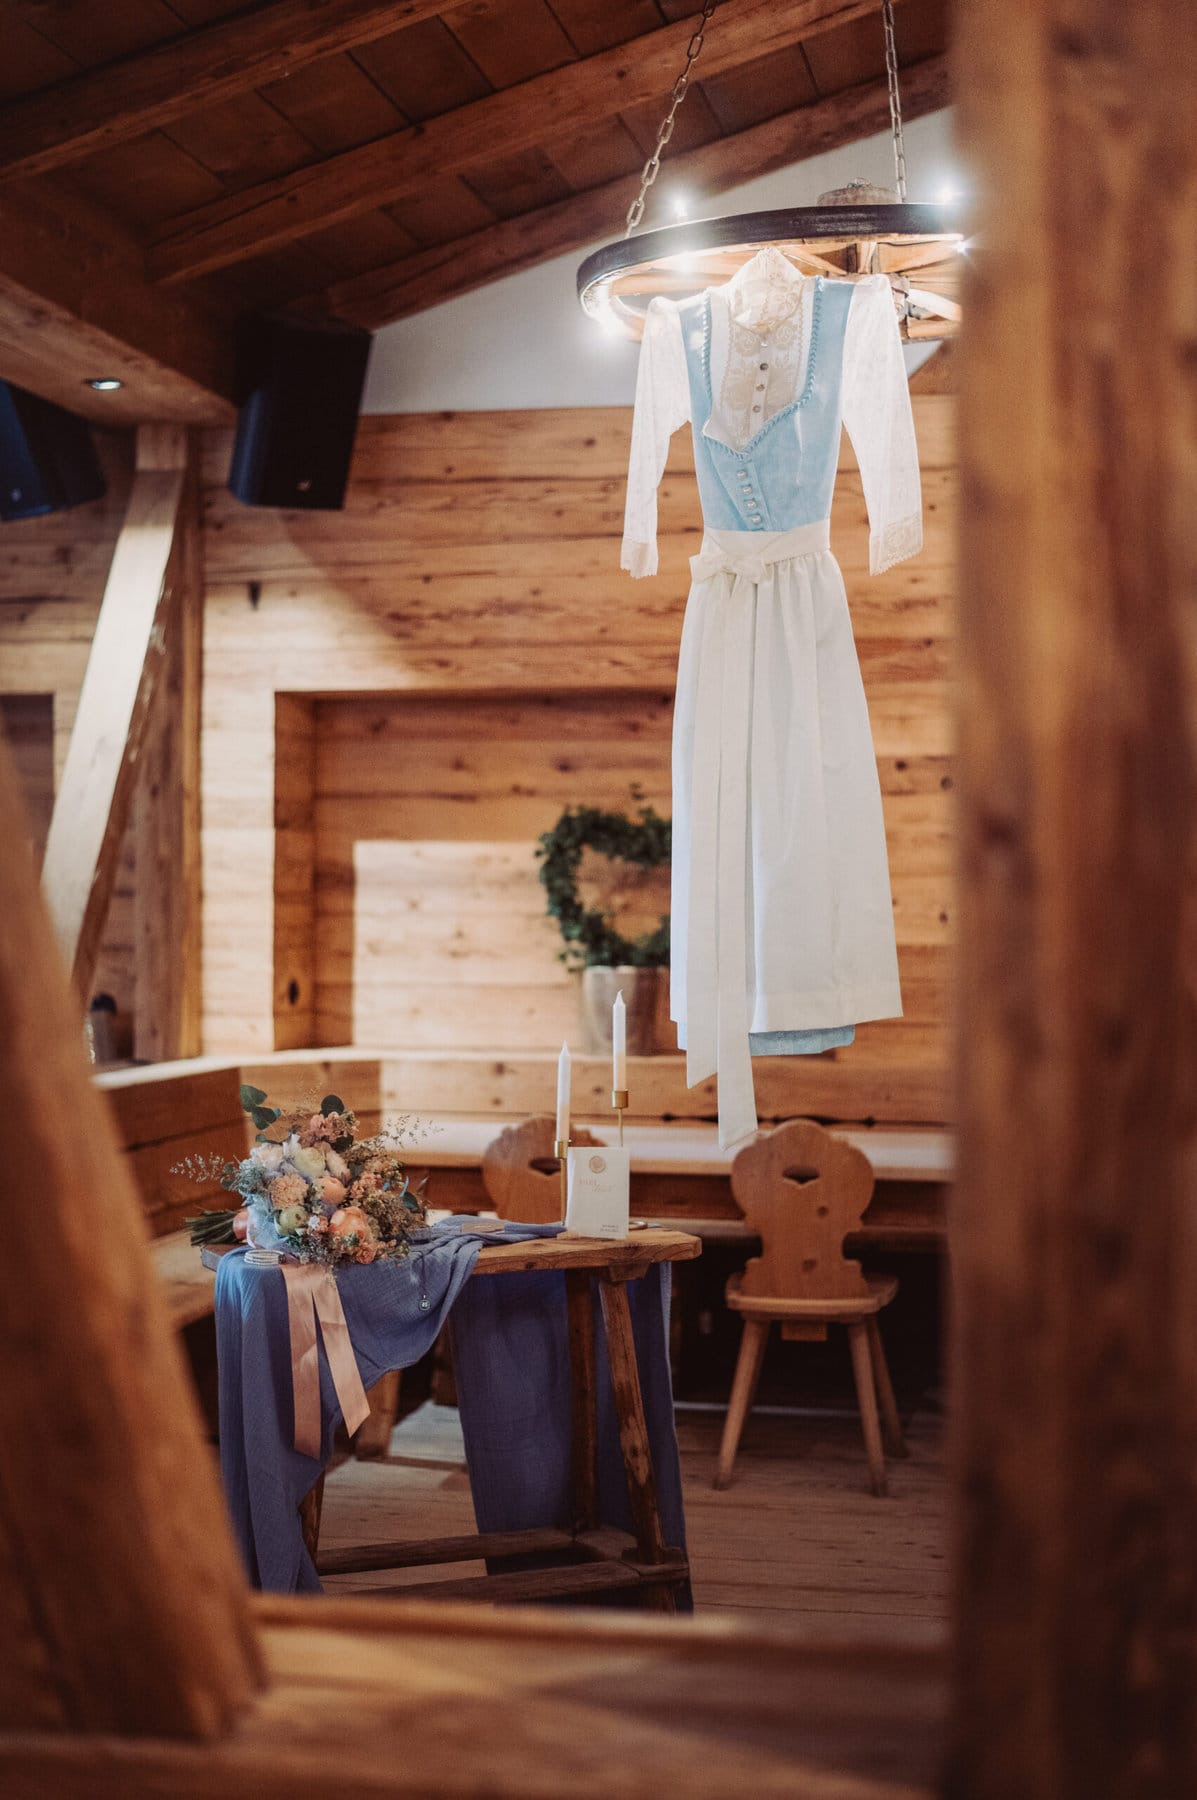 Das Getting Ready der Braut auf der Meckatzer Sportalp. In einem Raum aus Holz hängt das Shooting-Kleid der Braut. Nebenan steht ein Beistelltisch mit ihrem Brautstrauß.